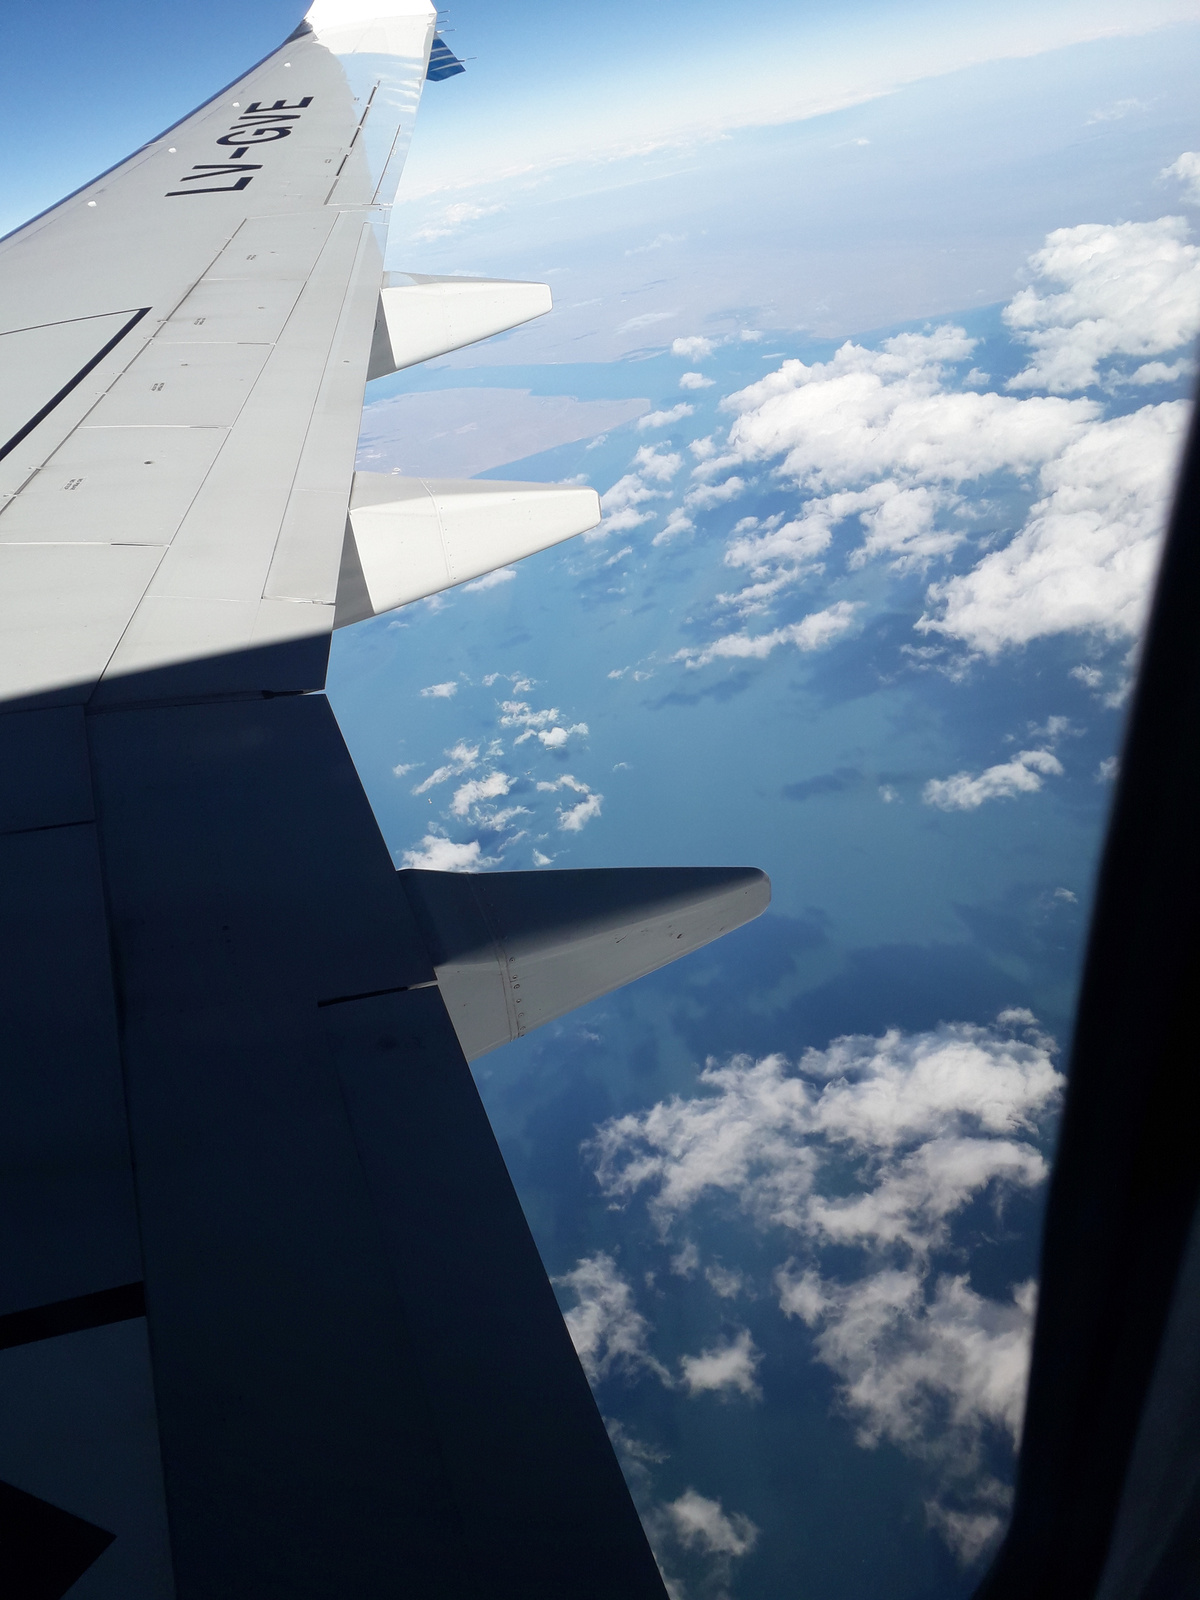 Magellán-szoros egy része repülőből